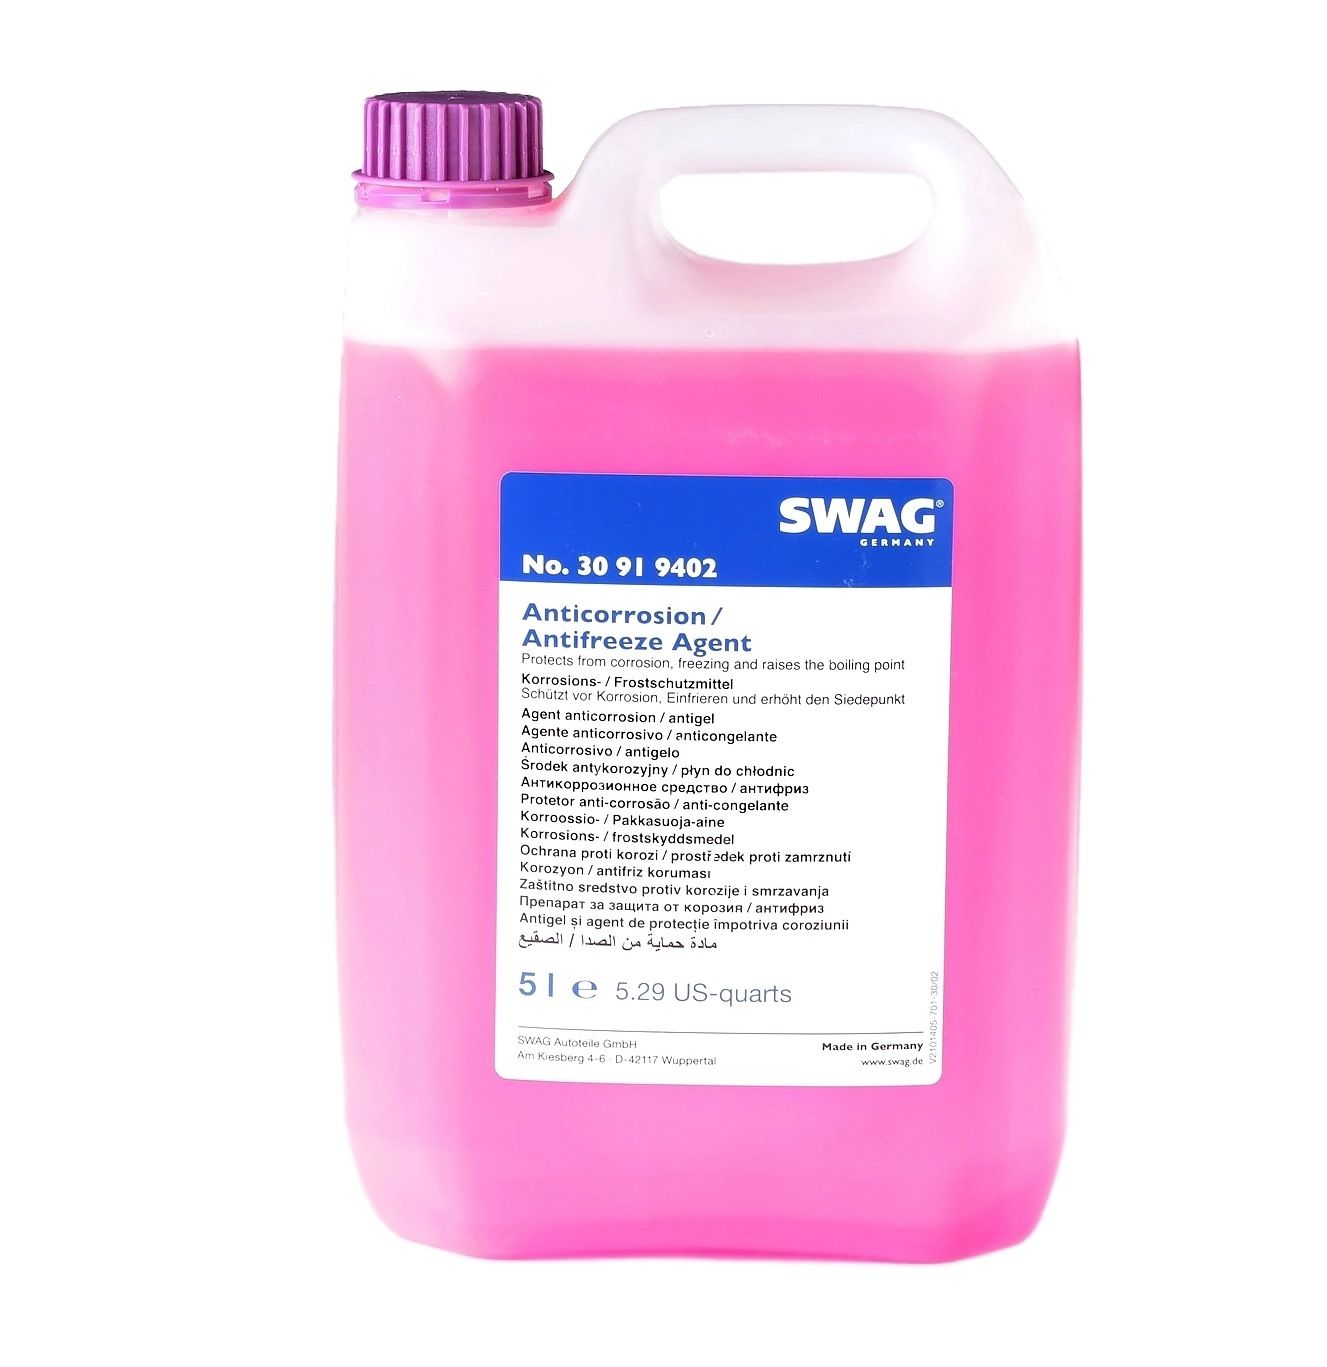 SWAG Anticongelante 30 91 9402